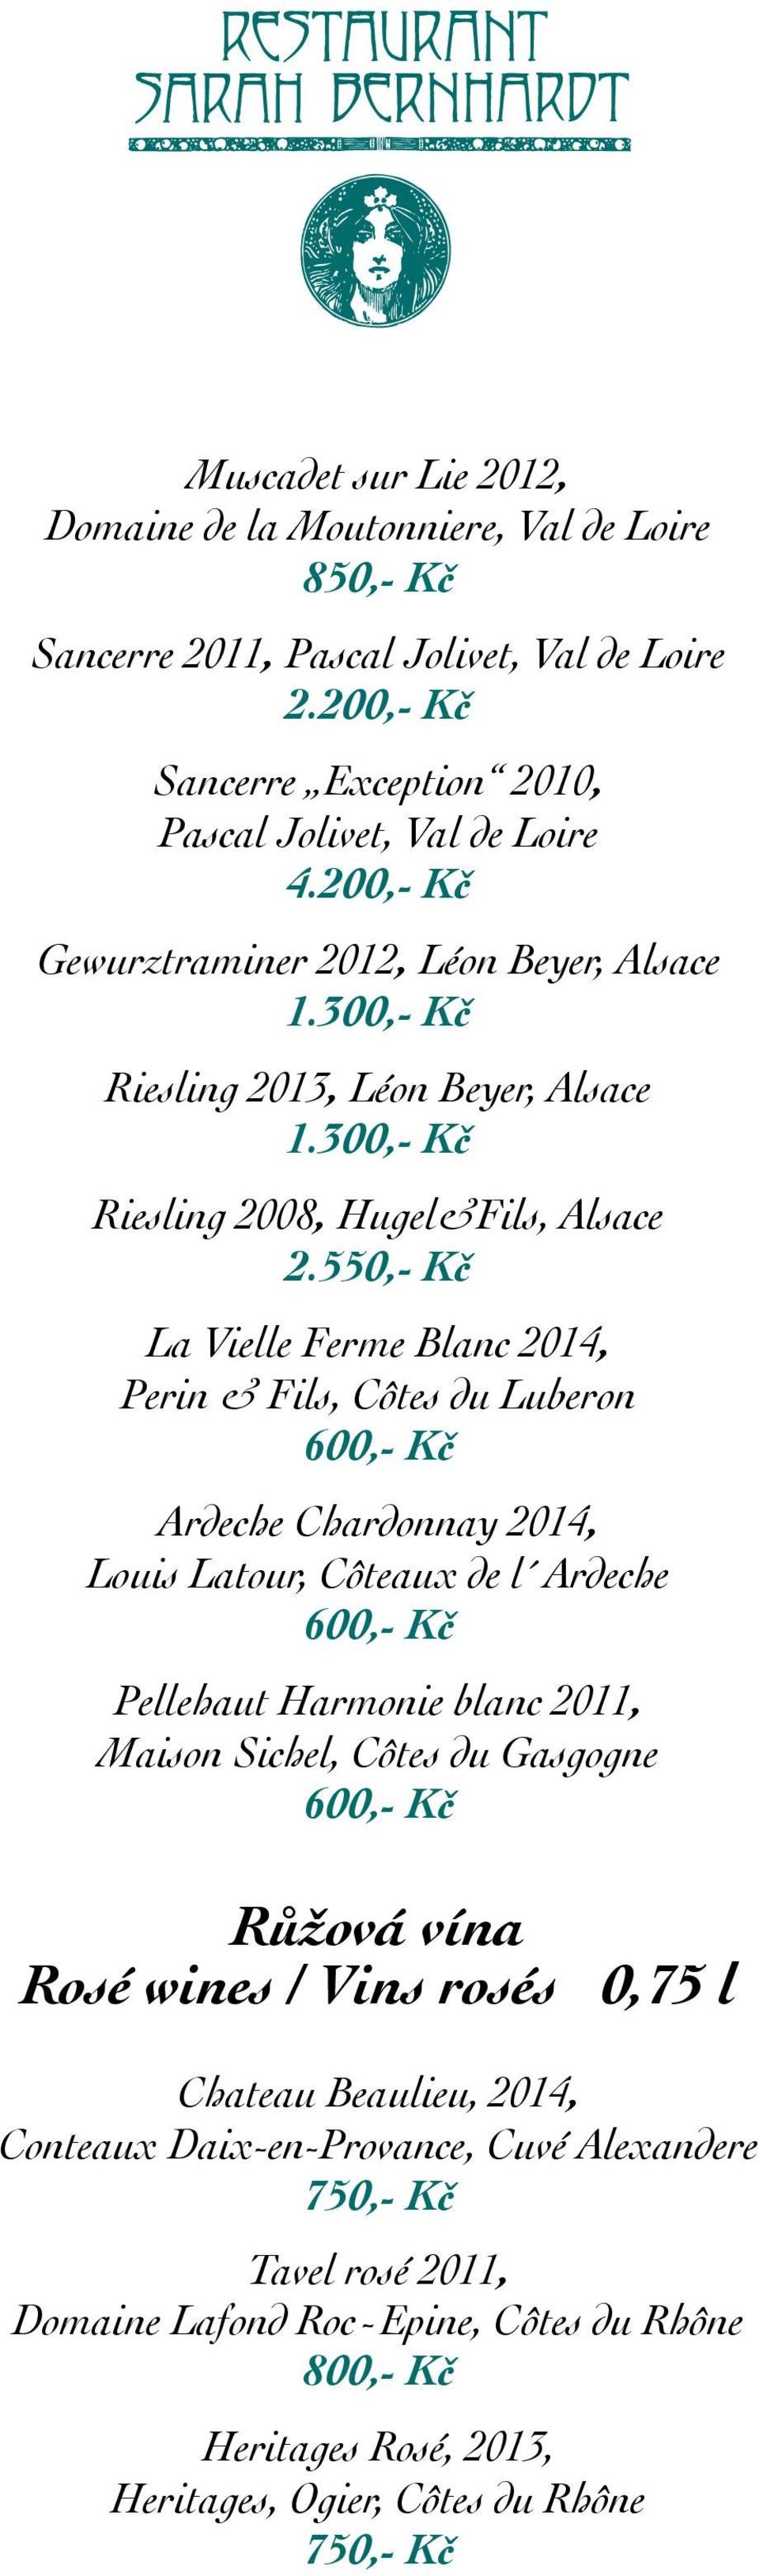 550,- Kč La Vielle Ferme Blanc 2014, Perin & Fils, Côtes du Luberon Ardeche Chardonnay 2014, Louis Latour, Côteaux de l Ardeche Pellehaut Harmonie blanc 2011, Maison Sichel, Côtes du Gasgogne